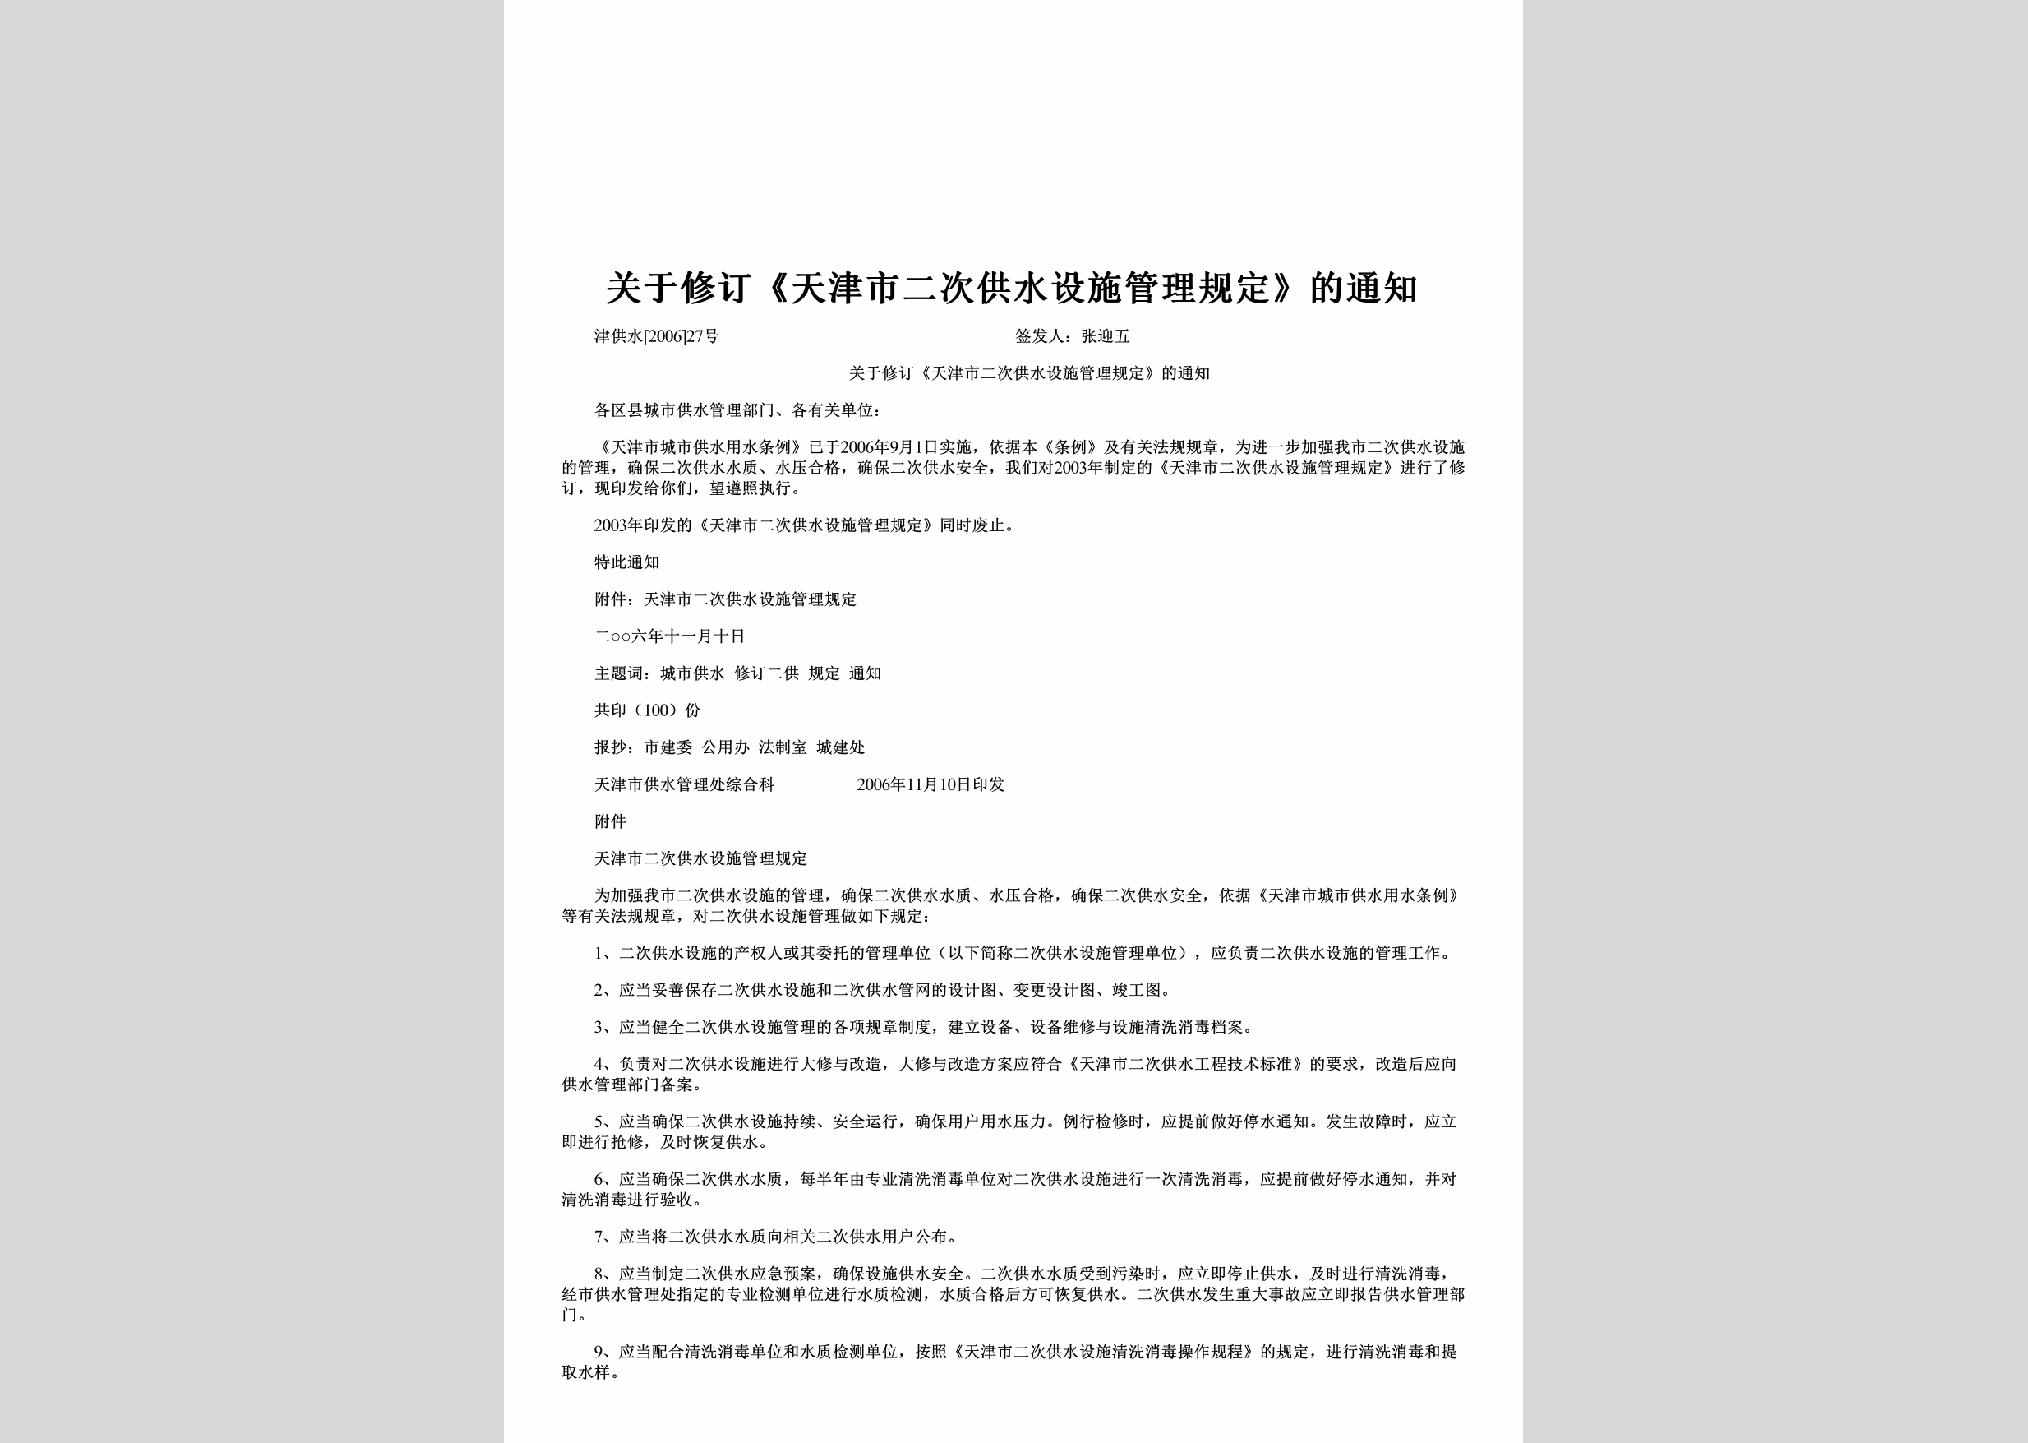 津供水[2006]27号：关于修订《天津市二次供水设施管理规定》的通知